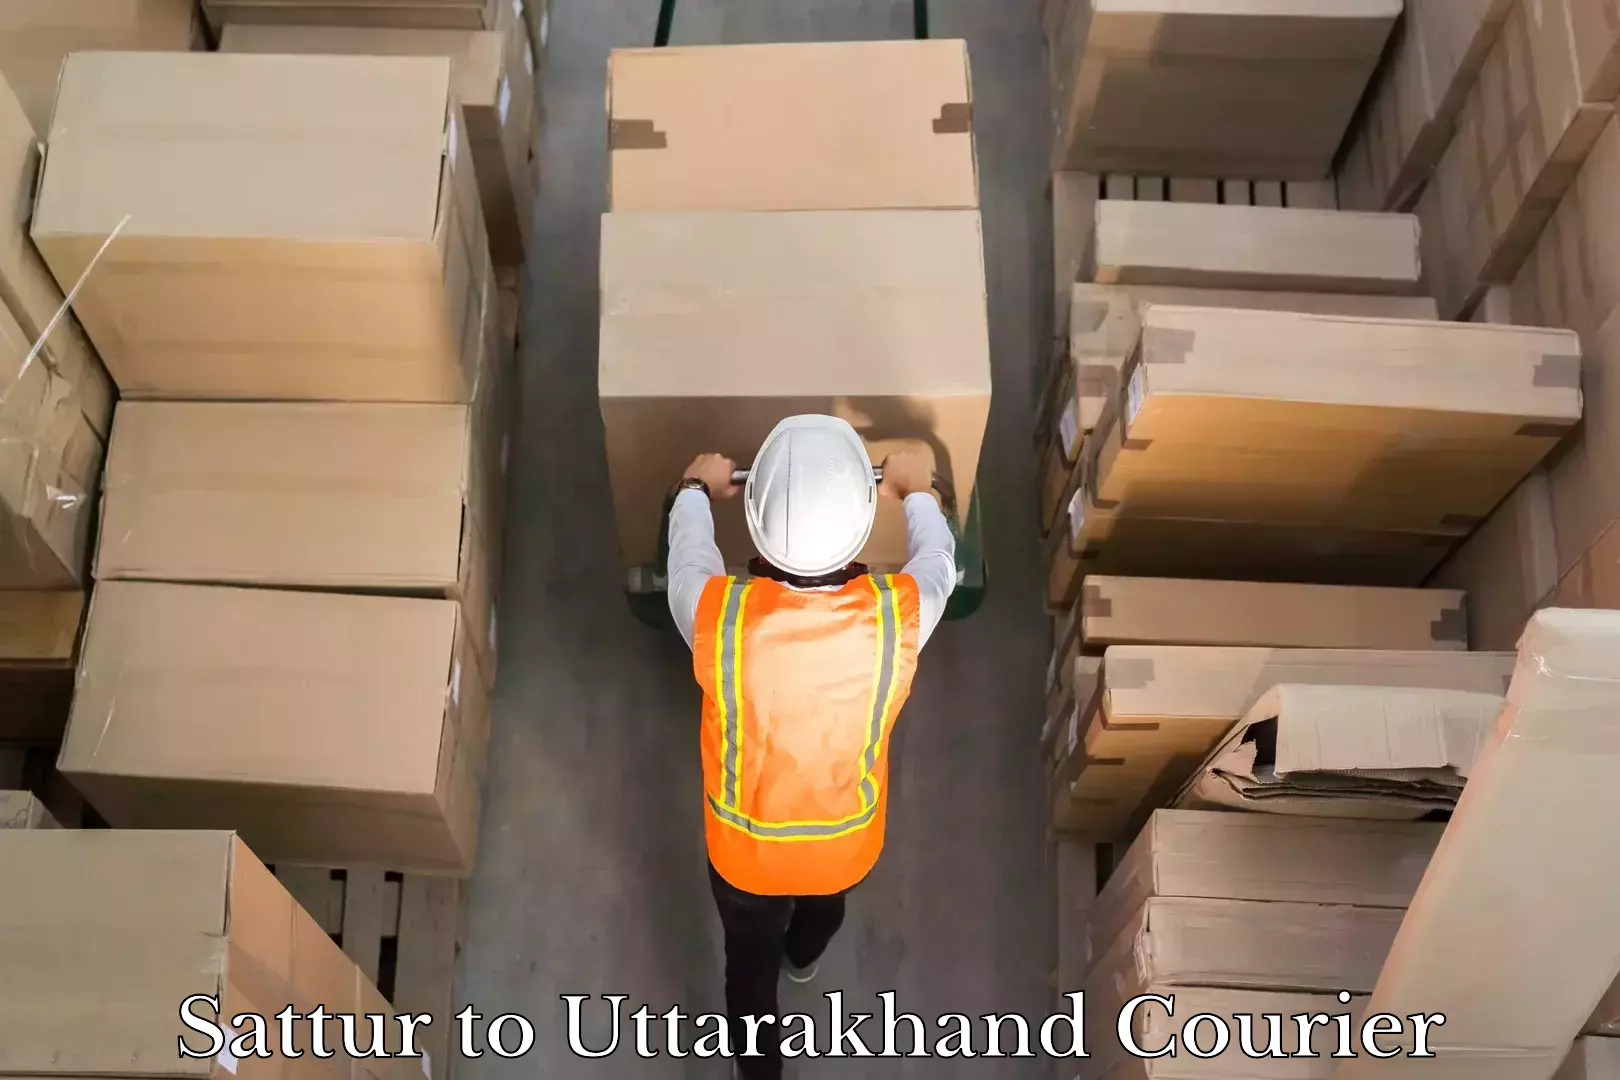 Bulk courier orders Sattur to Uttarakhand